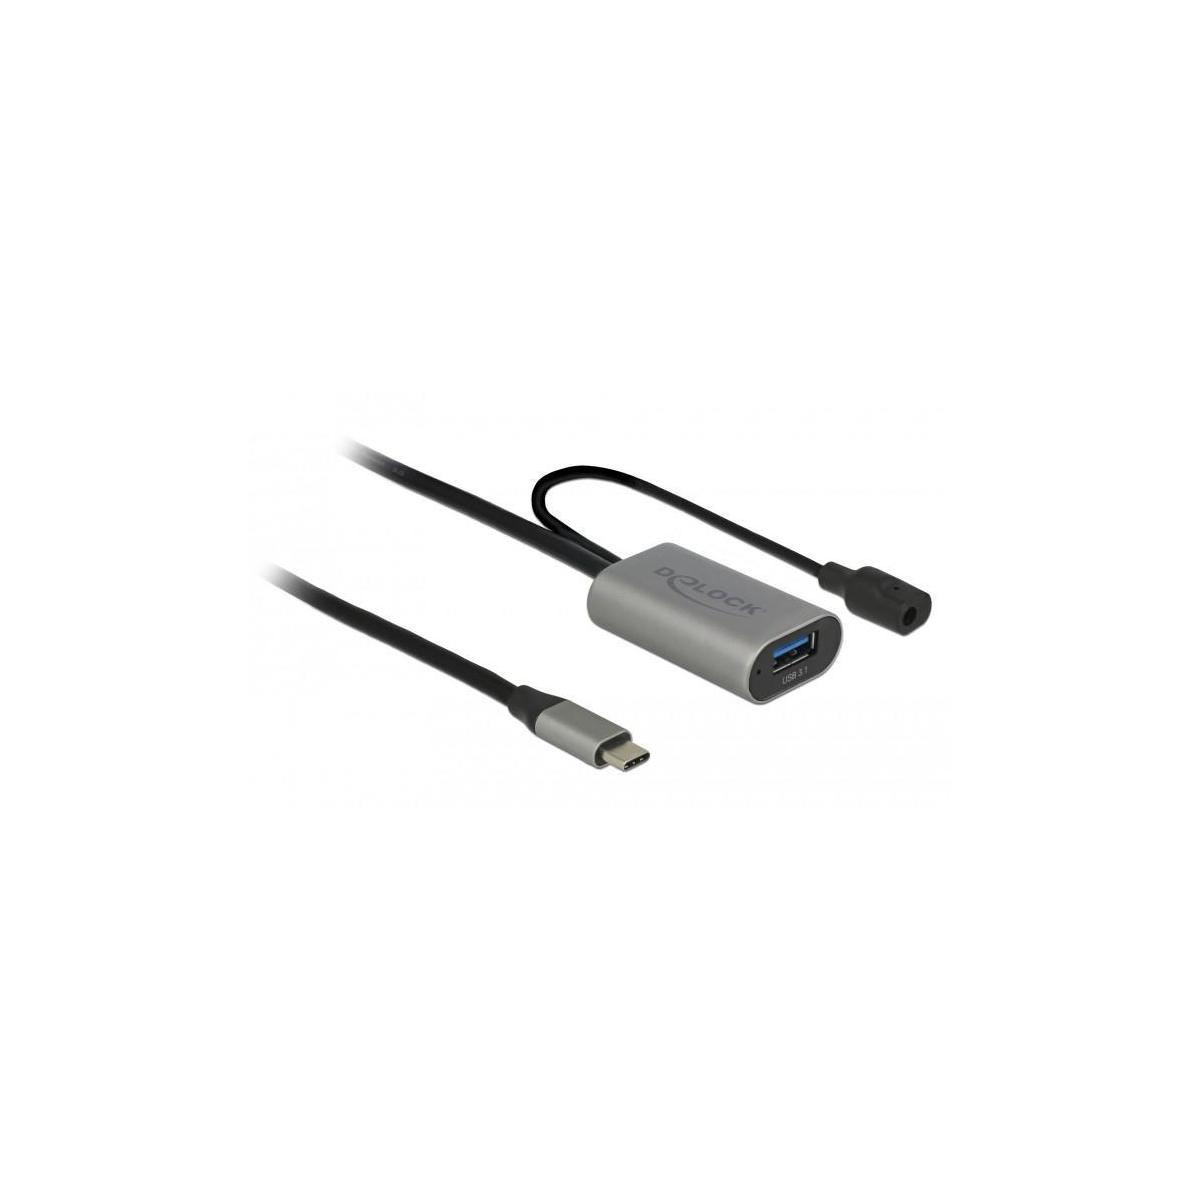 DELOCK 85391 Silber USB Kabel,